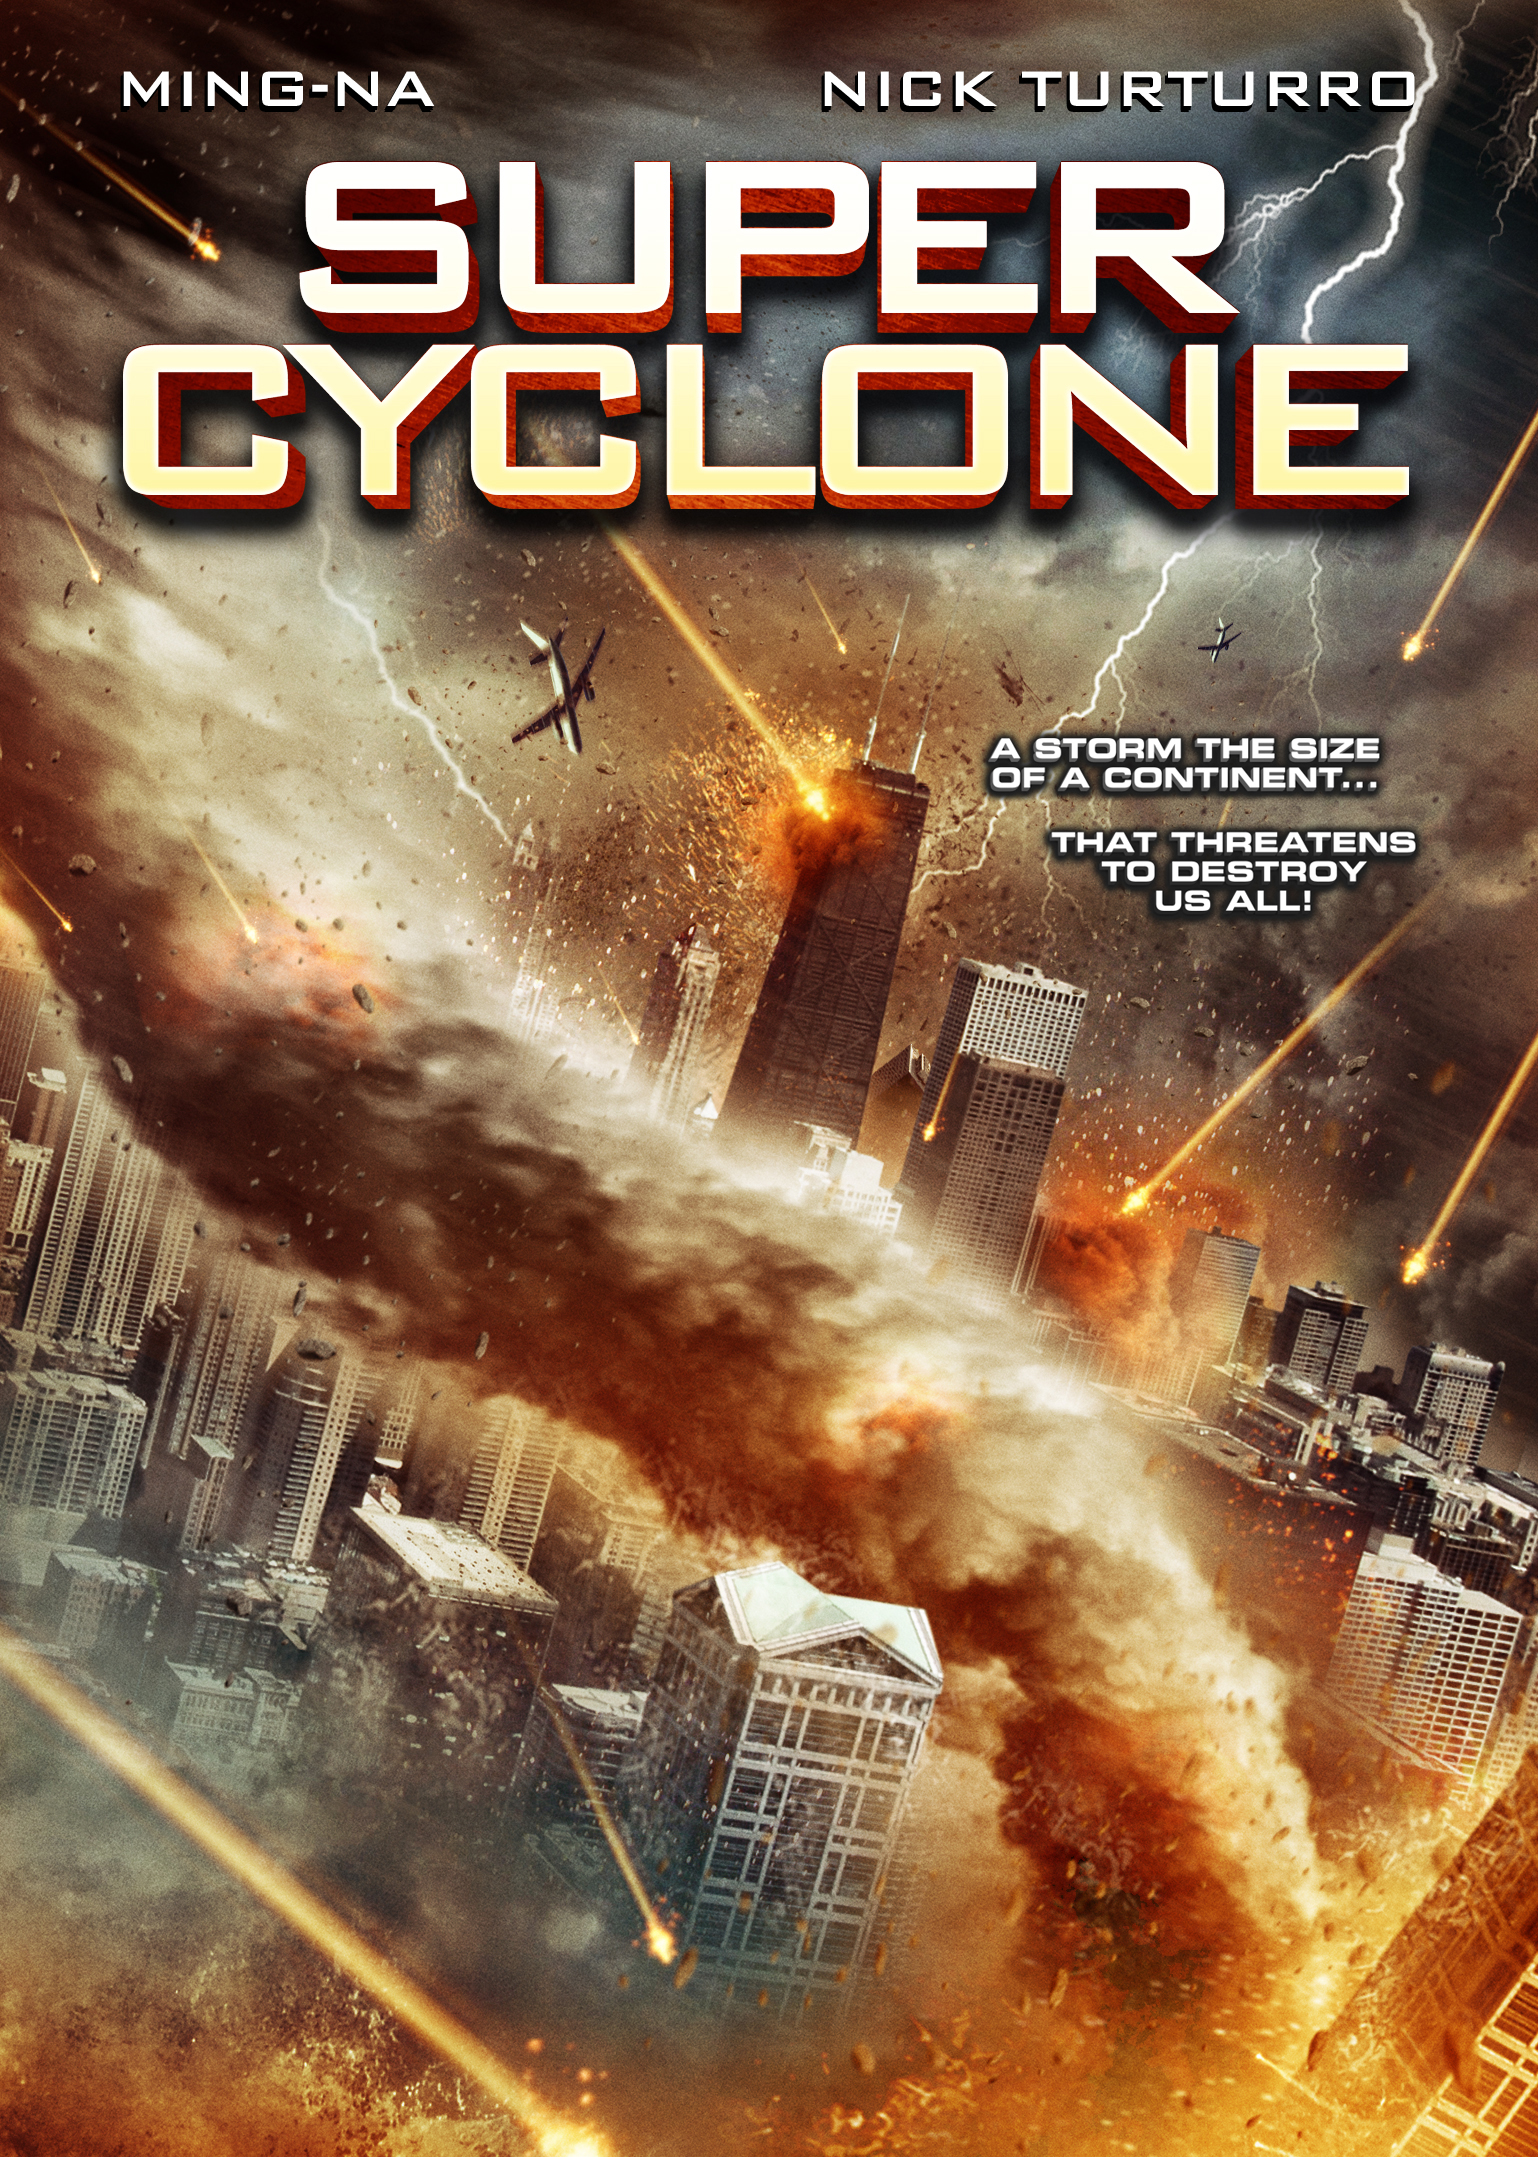 Super Cyclone (2012) มหาภัยไซโคลนถล่มโลก Ming-Na Wen